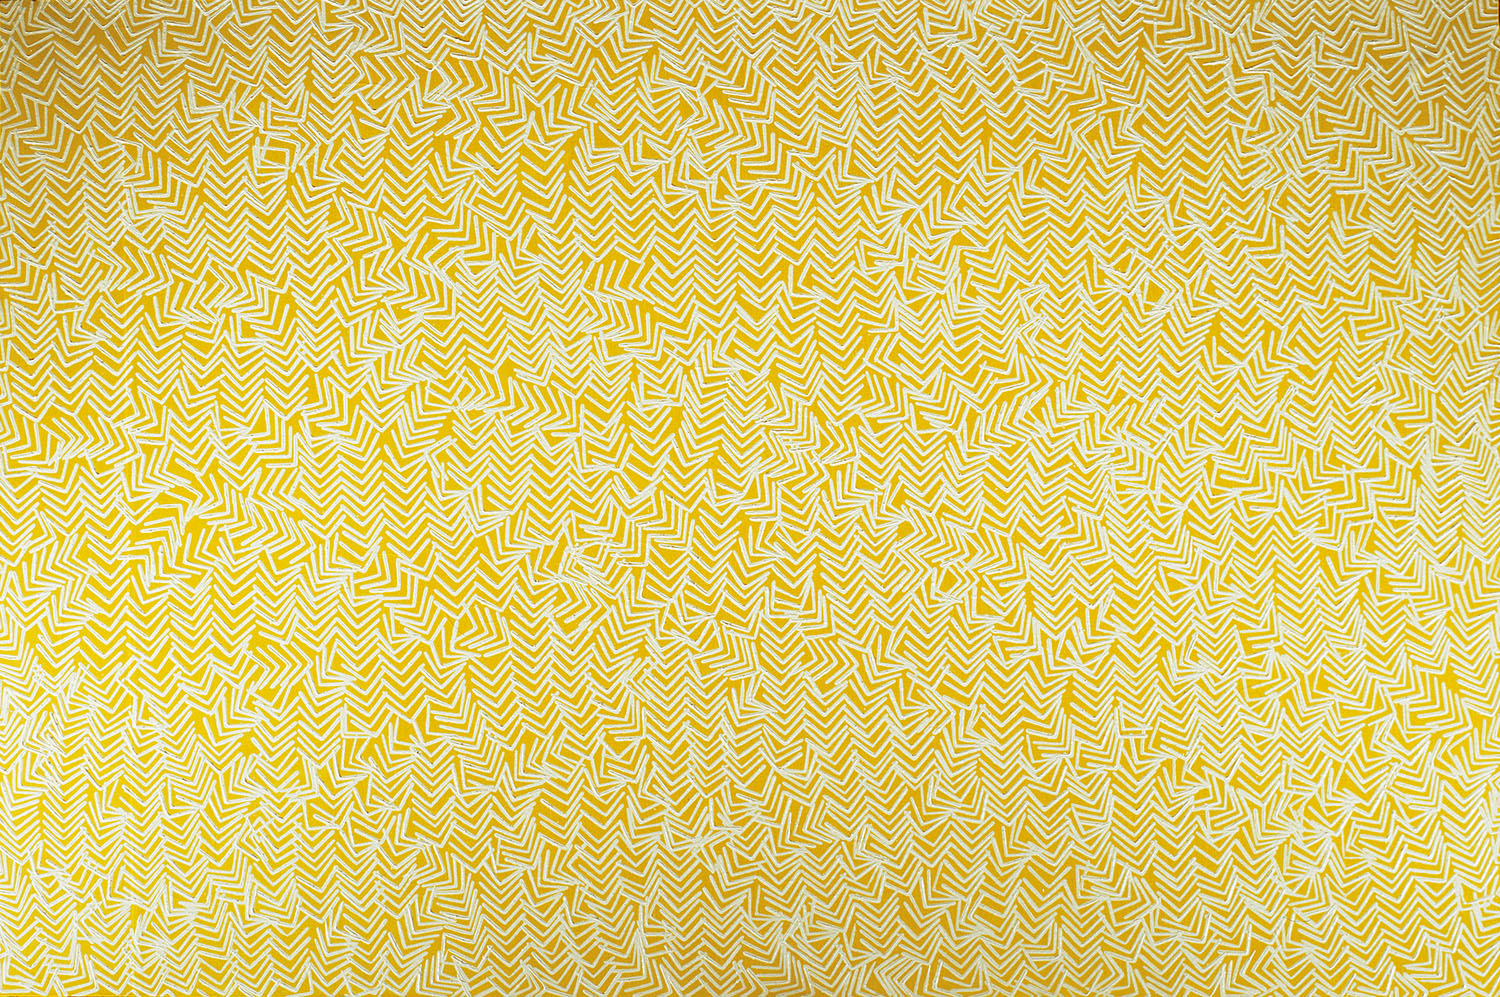 Composición cinética, 1974, óleo sobre tela, cm 97 x 146